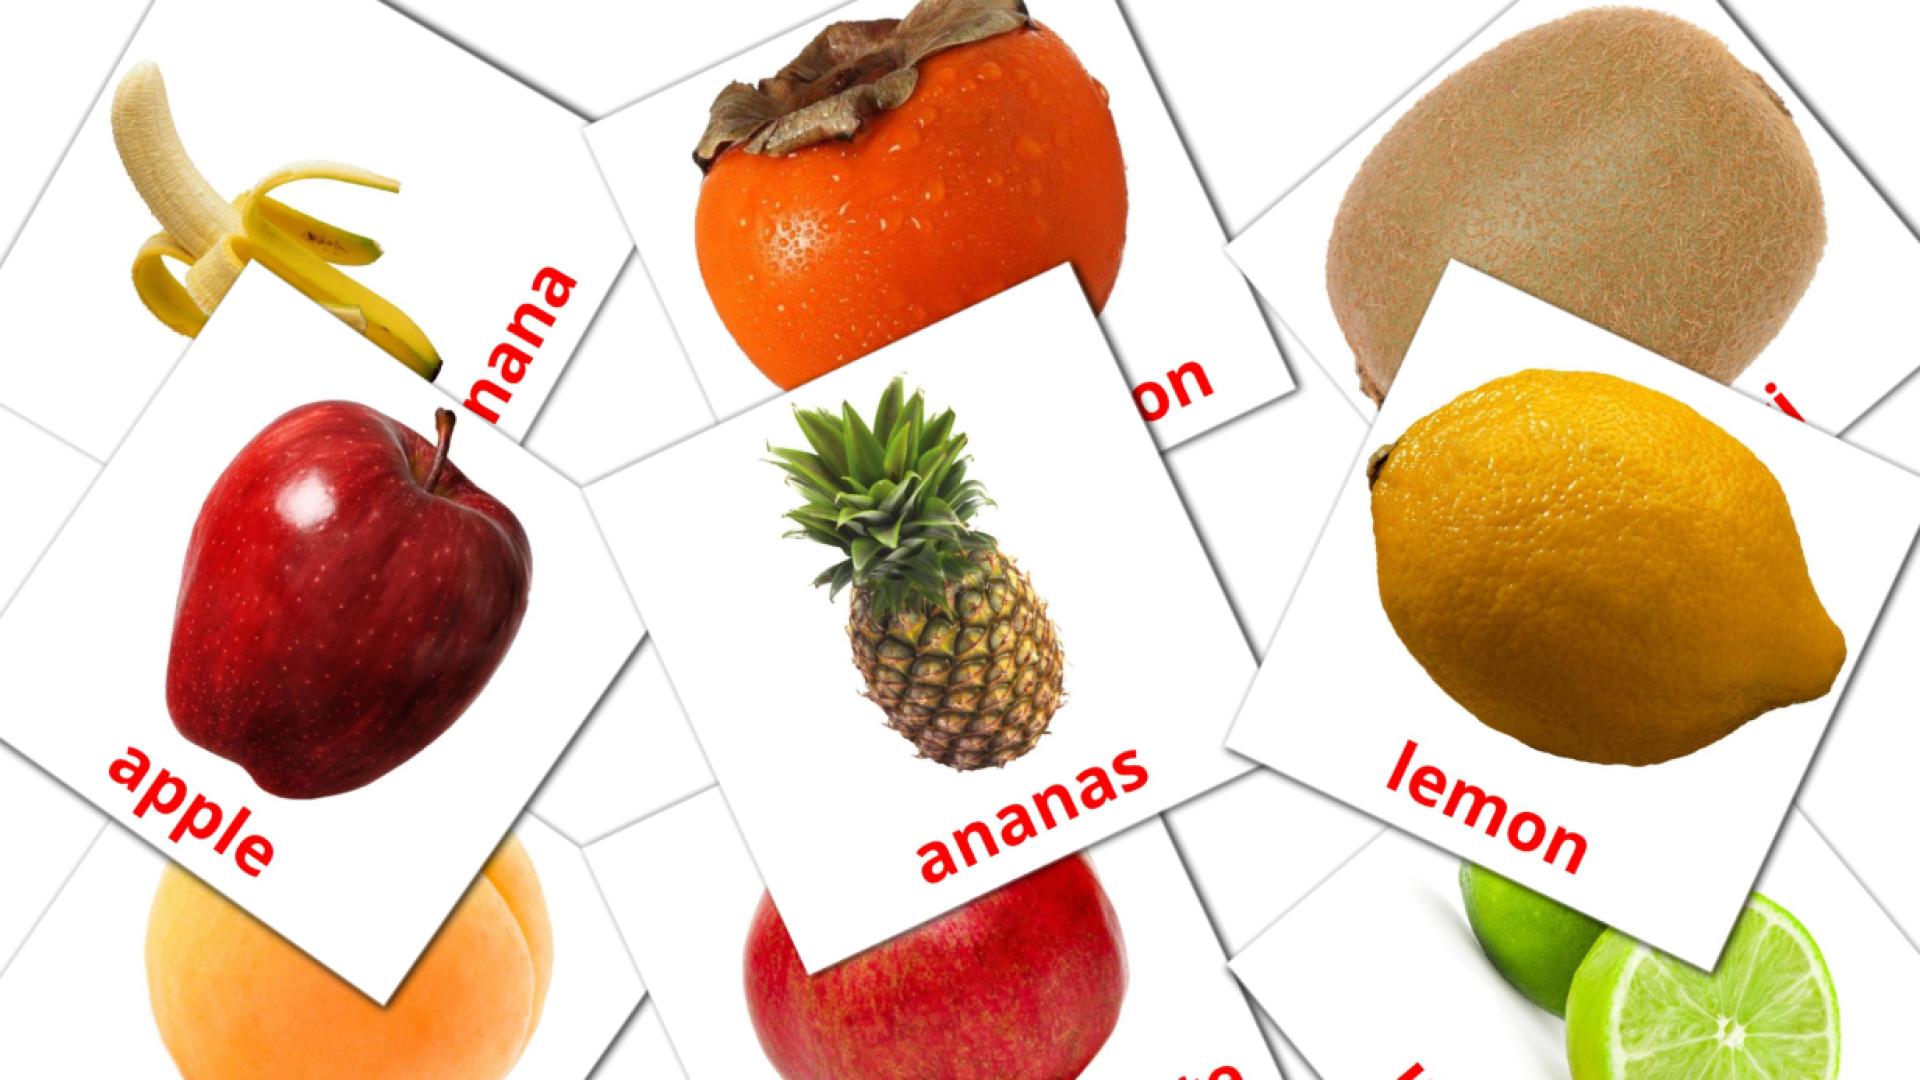 20 Fruits flashcards